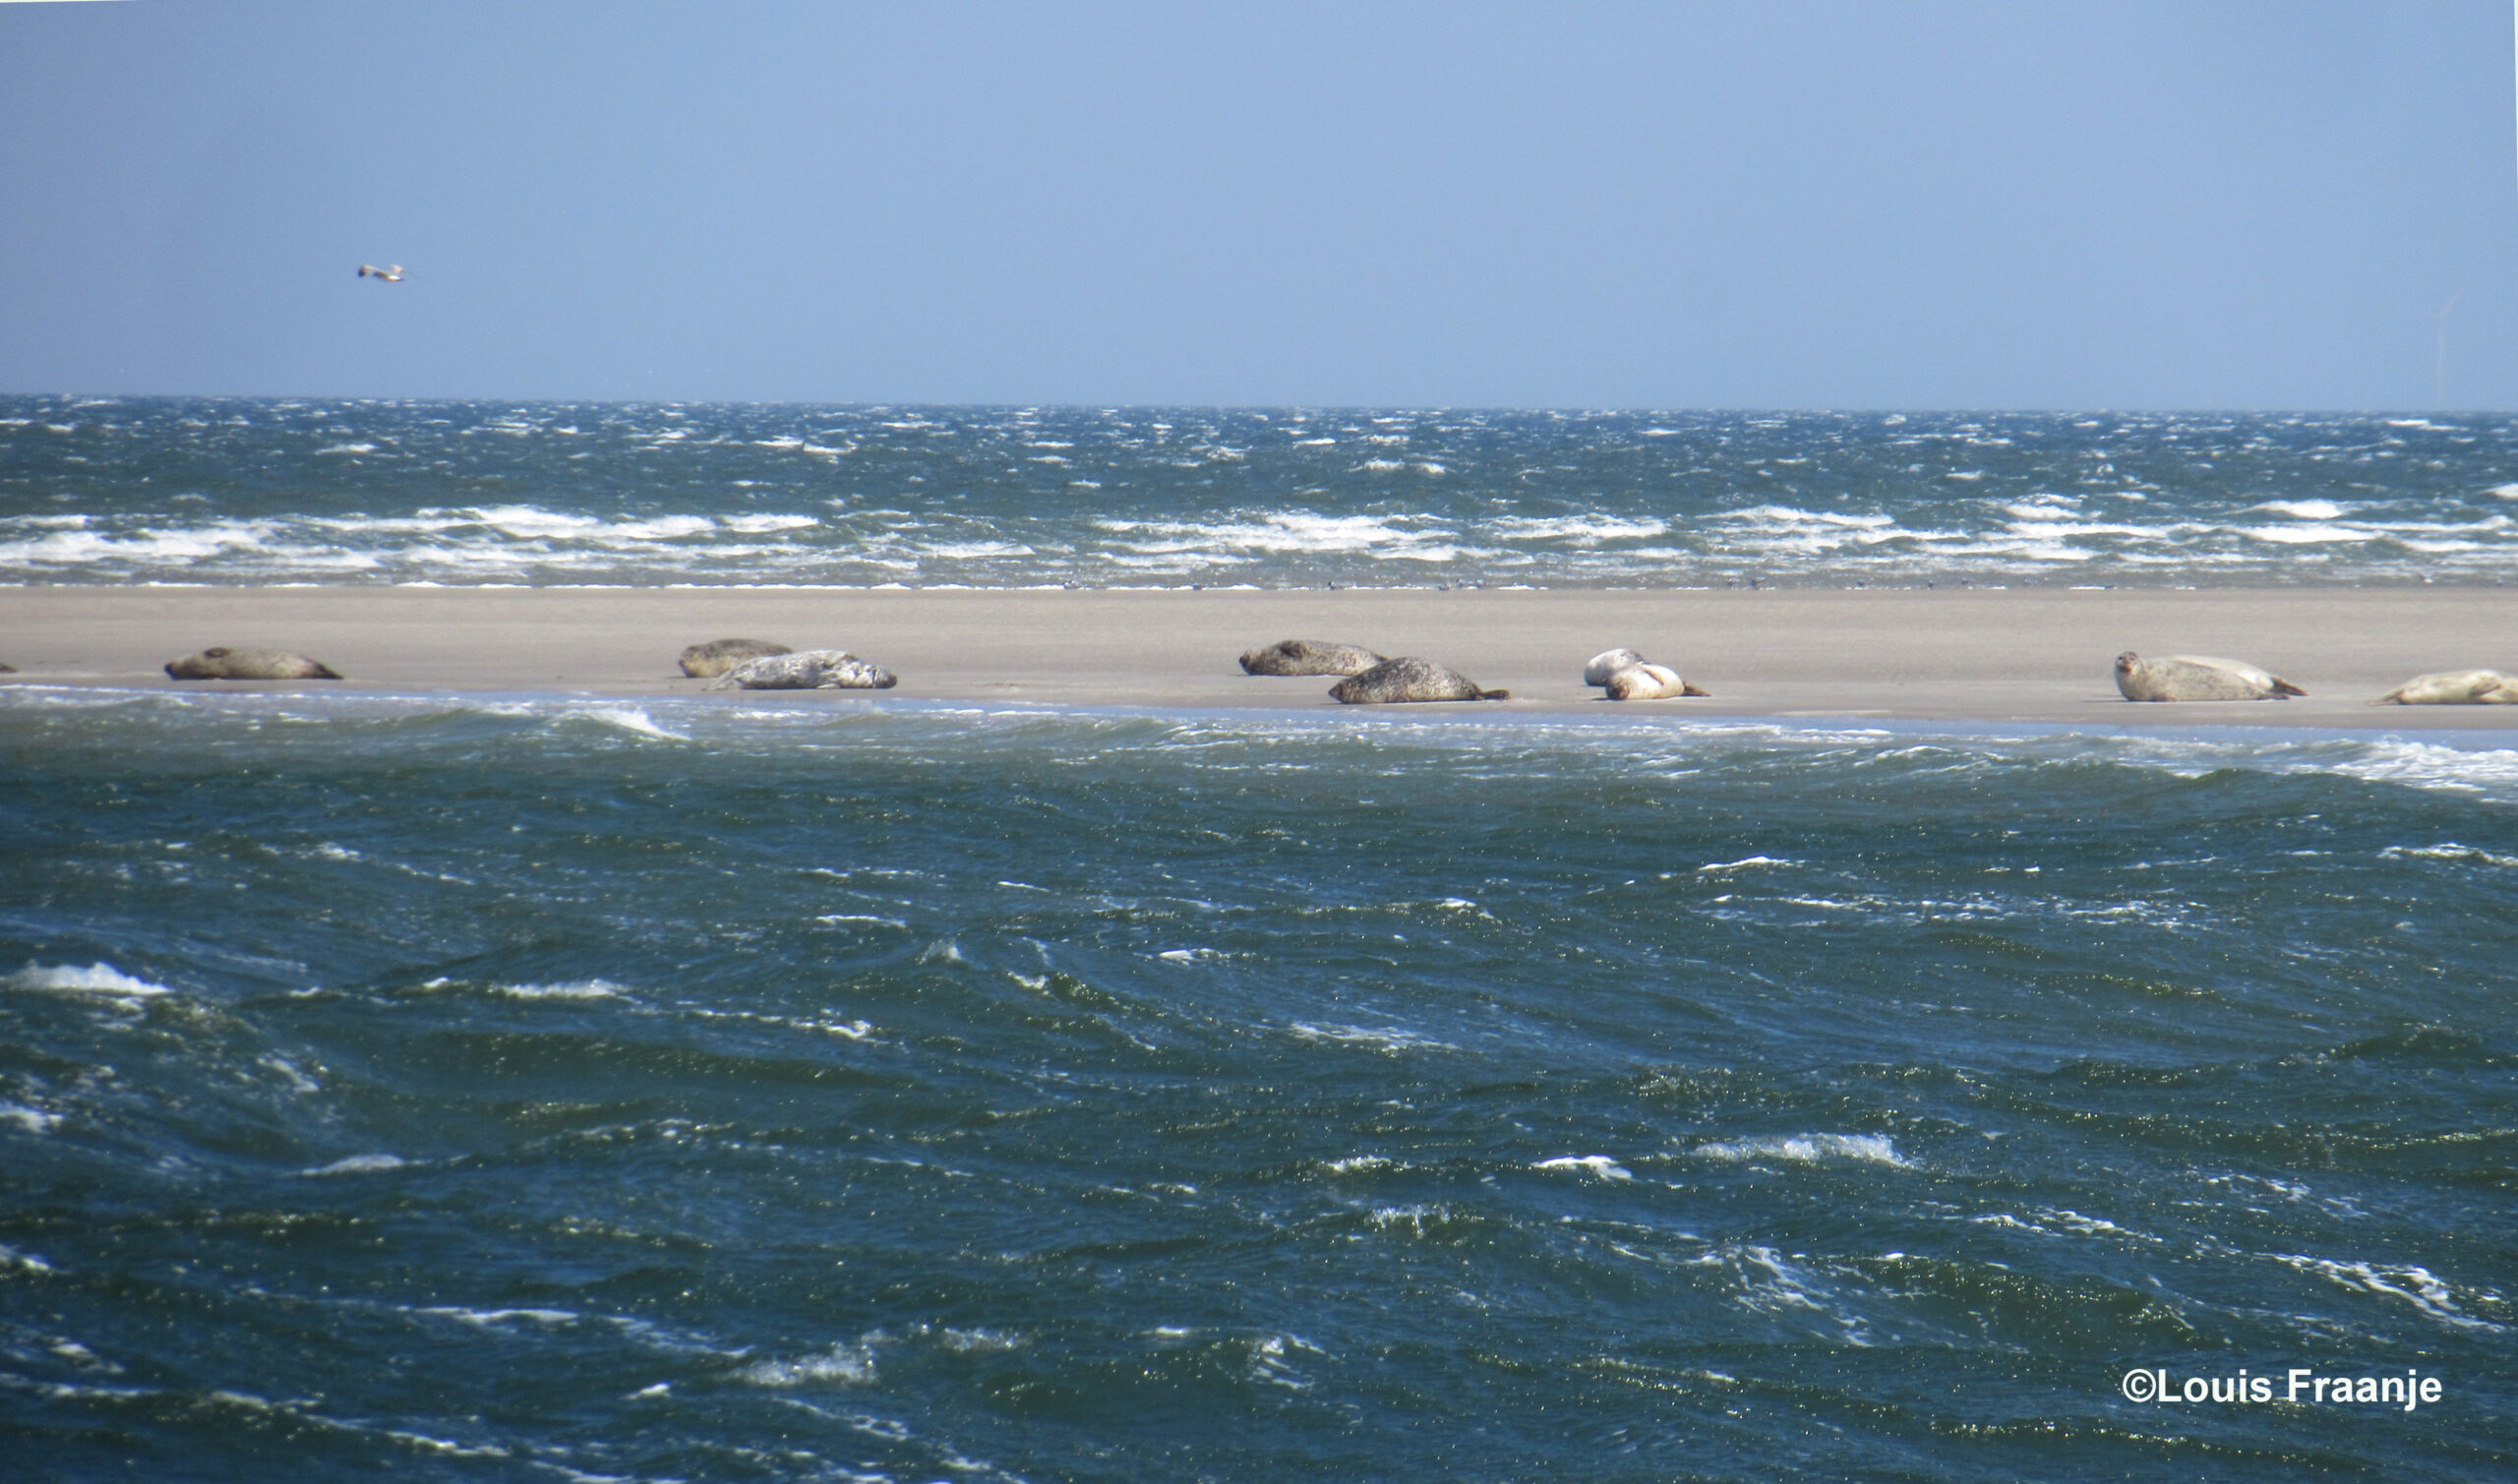 Op een zandbank liggen de zeehonden te rusten, vanaf een flinke afstand kunnen wij ze ongestoord bekijken - Foto: ©Louis Fraanje